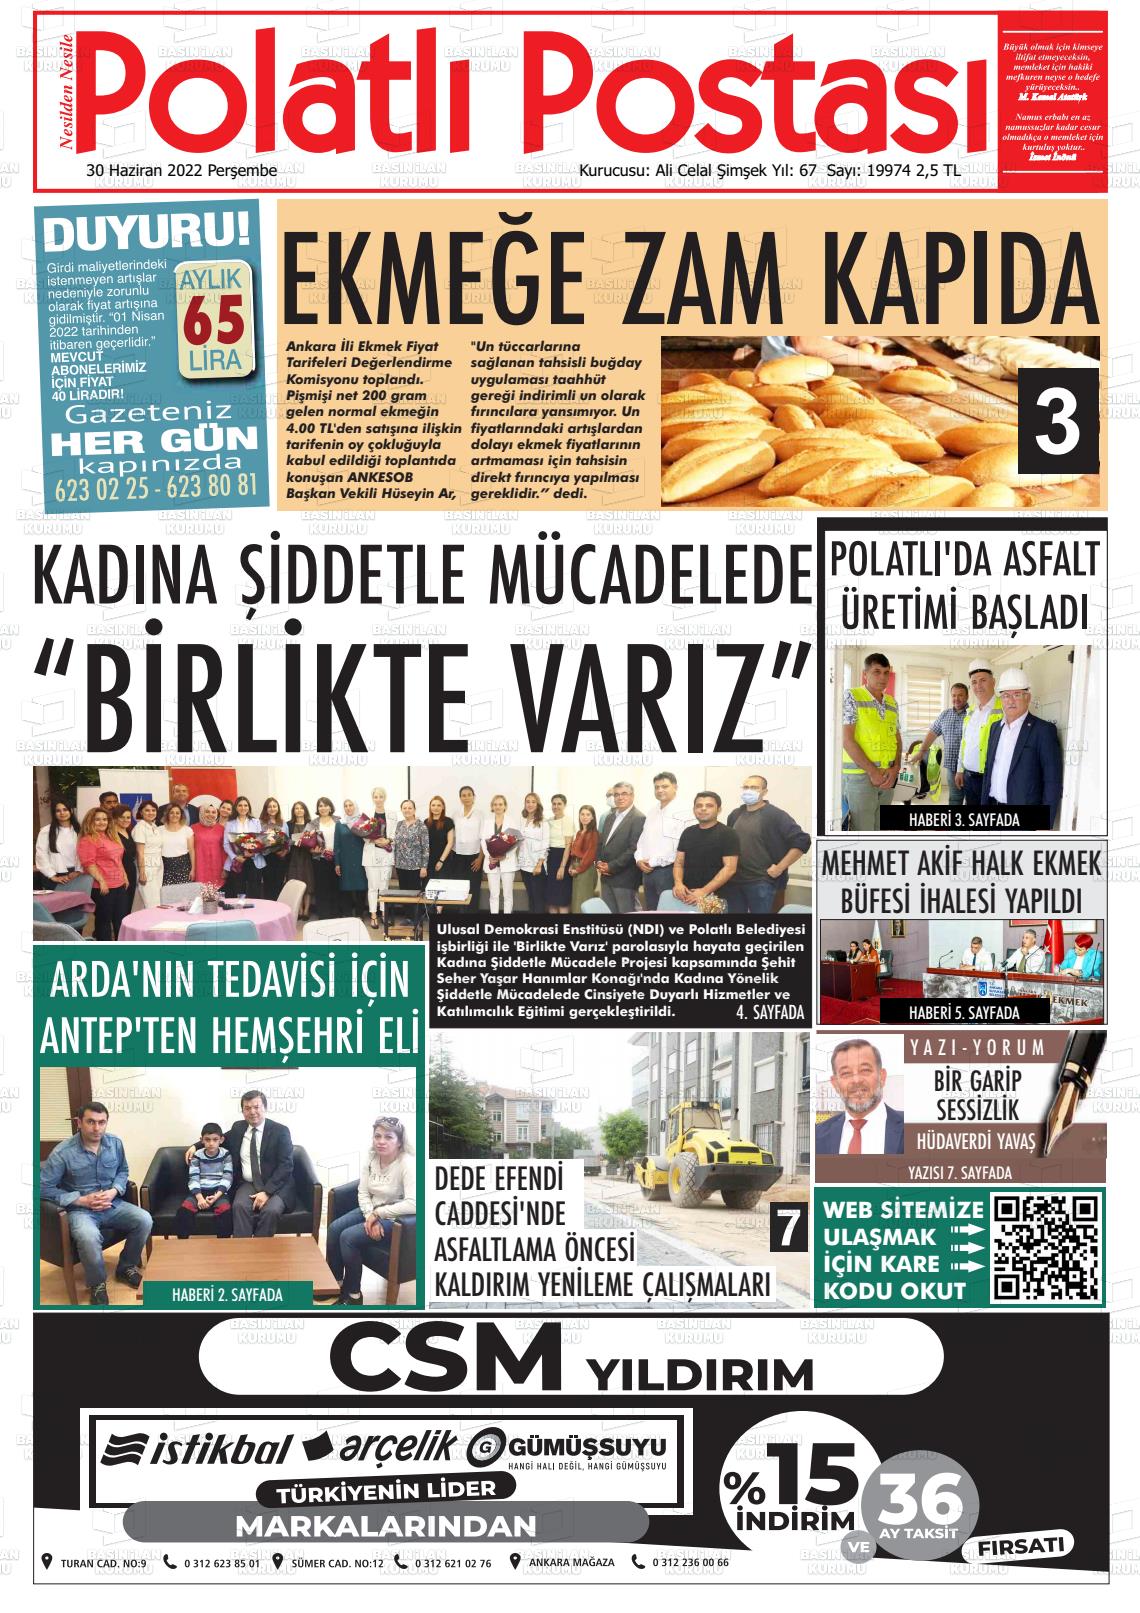 02 Temmuz 2022 Polatlı Postası Gazete Manşeti